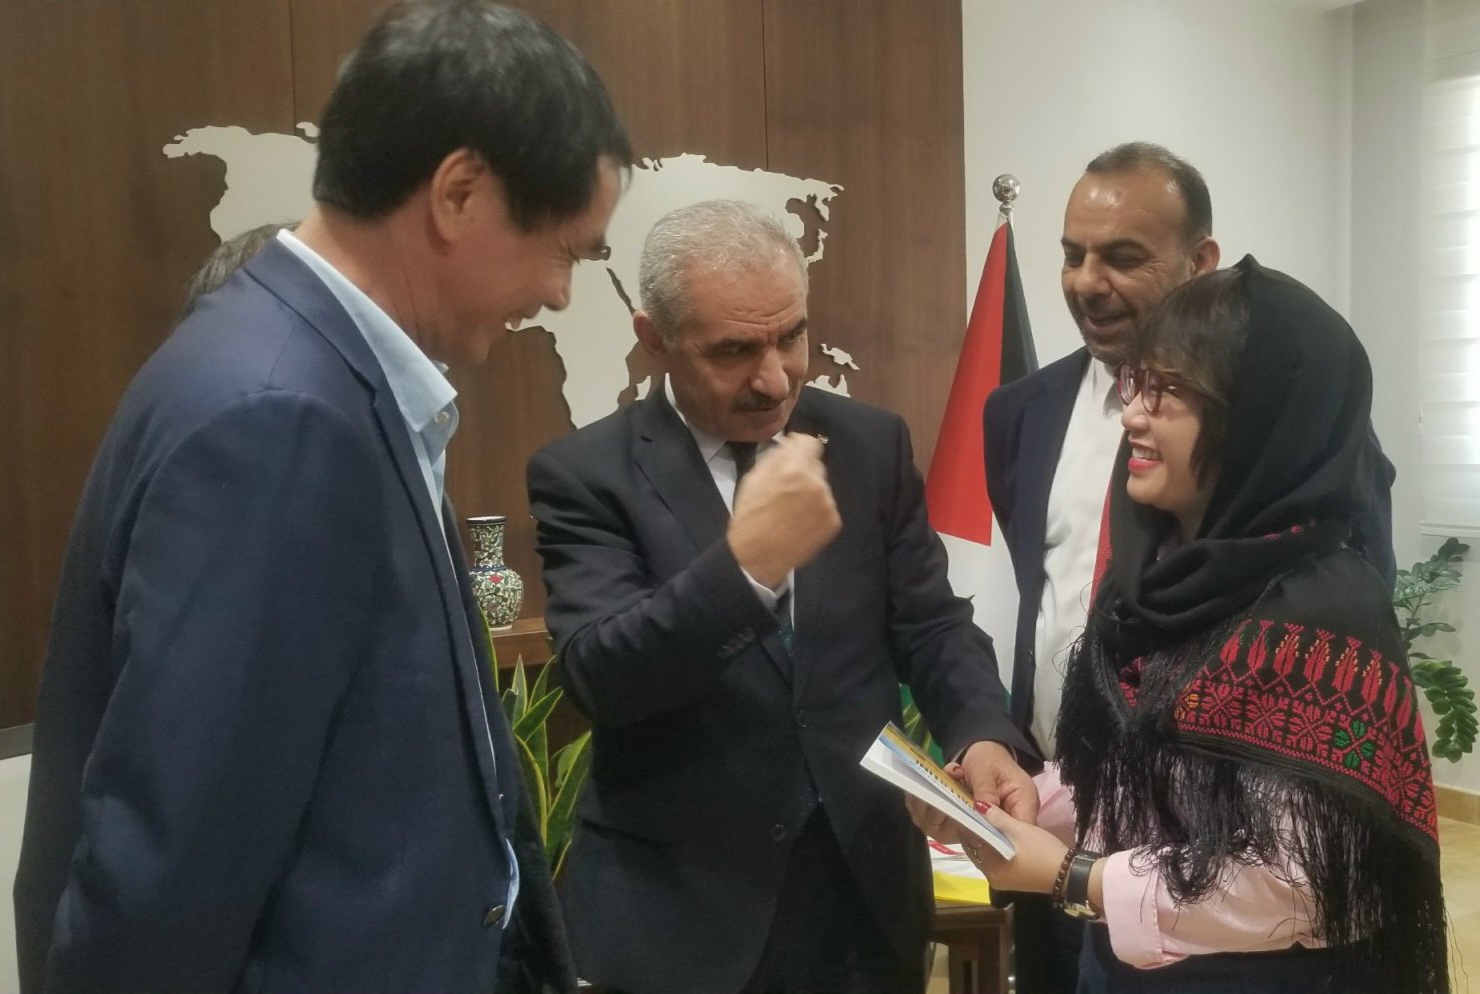 Thủ tướng Palestine Mohammad Shtayyeh (giữa) trao quyển sách Lịch sử đất nước Palestine cho đại diện Việt Nam, với hy vọng sách sẽ được in tiếng Việt. Ảnh: Hội Nhà văn TPHCM